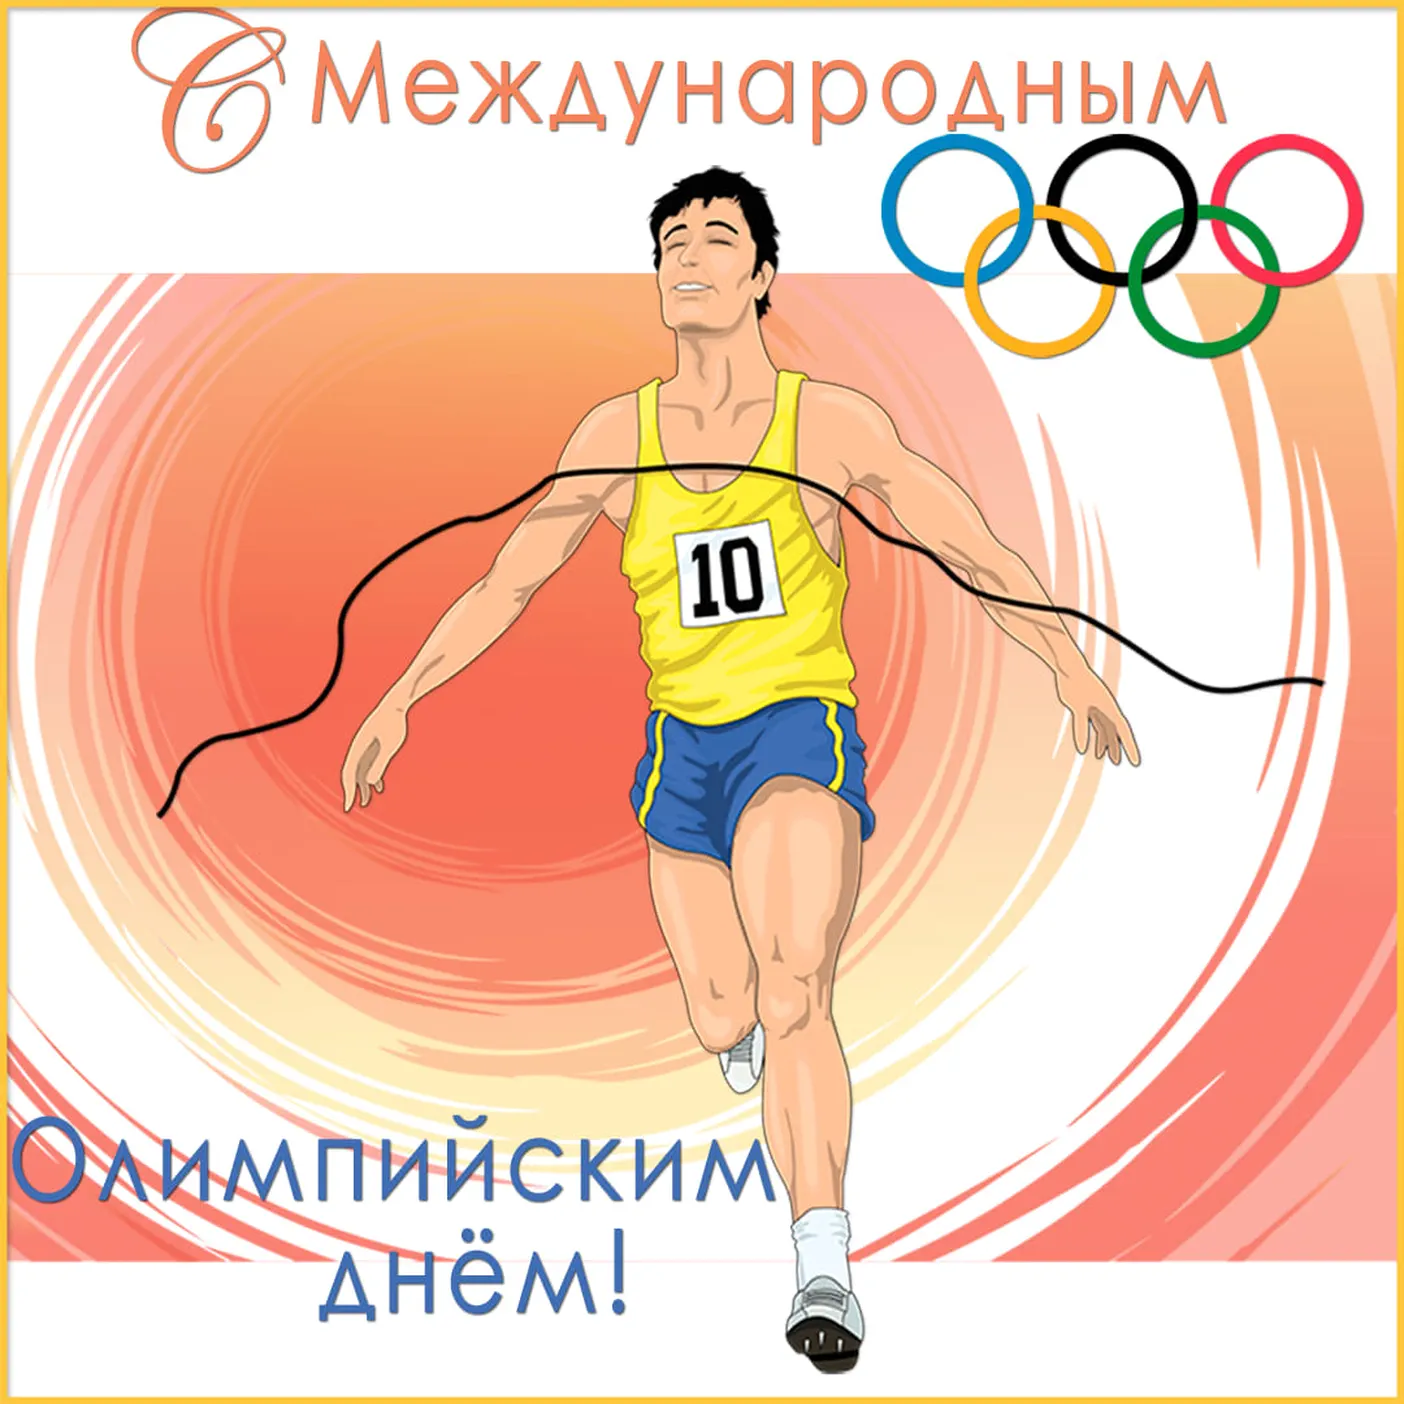 Яркая открытка с международным олимпийским днем